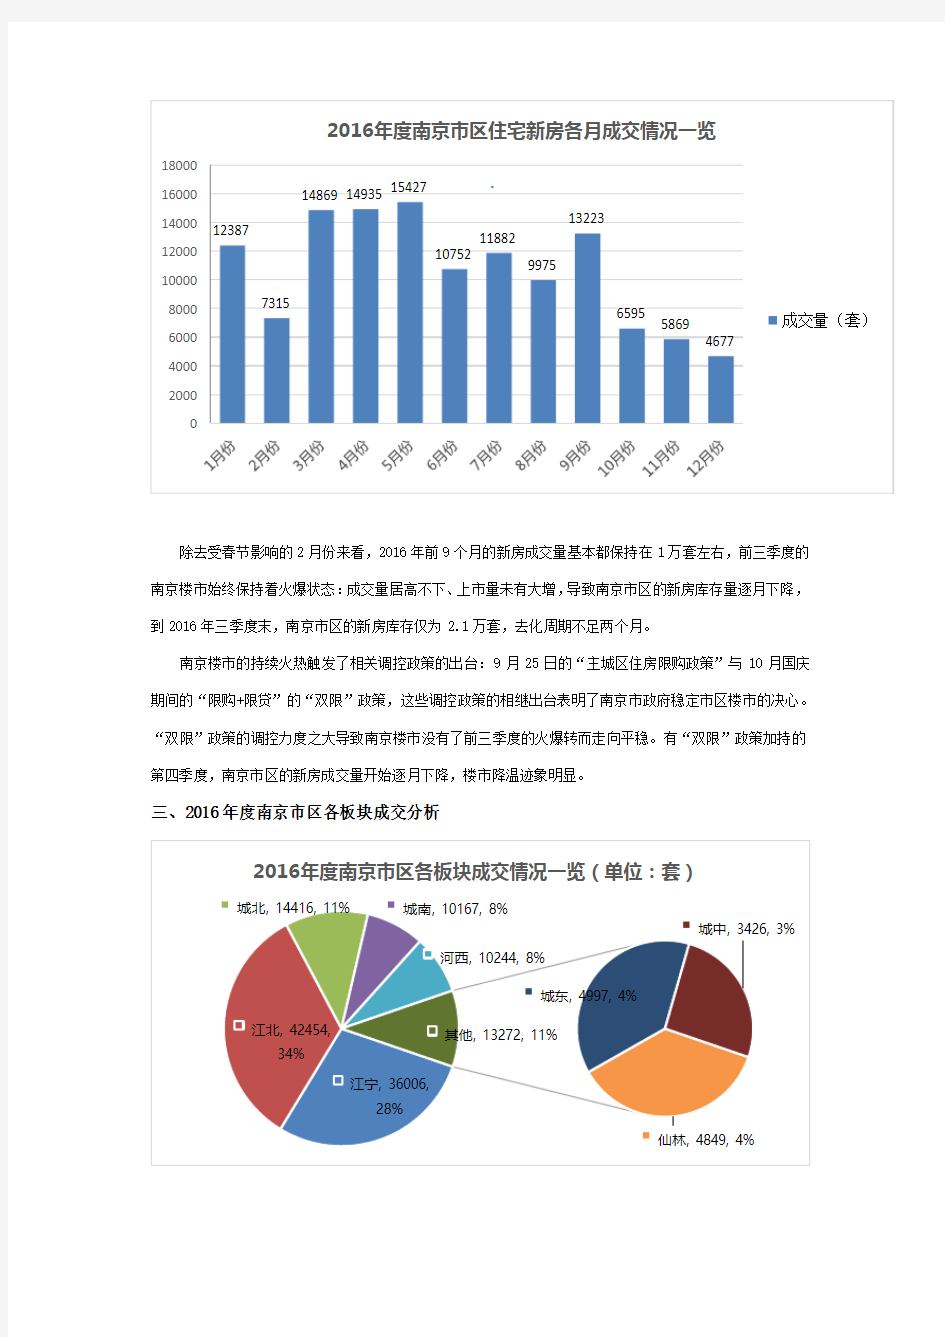 2016 年南京市区房地产市场分析报告